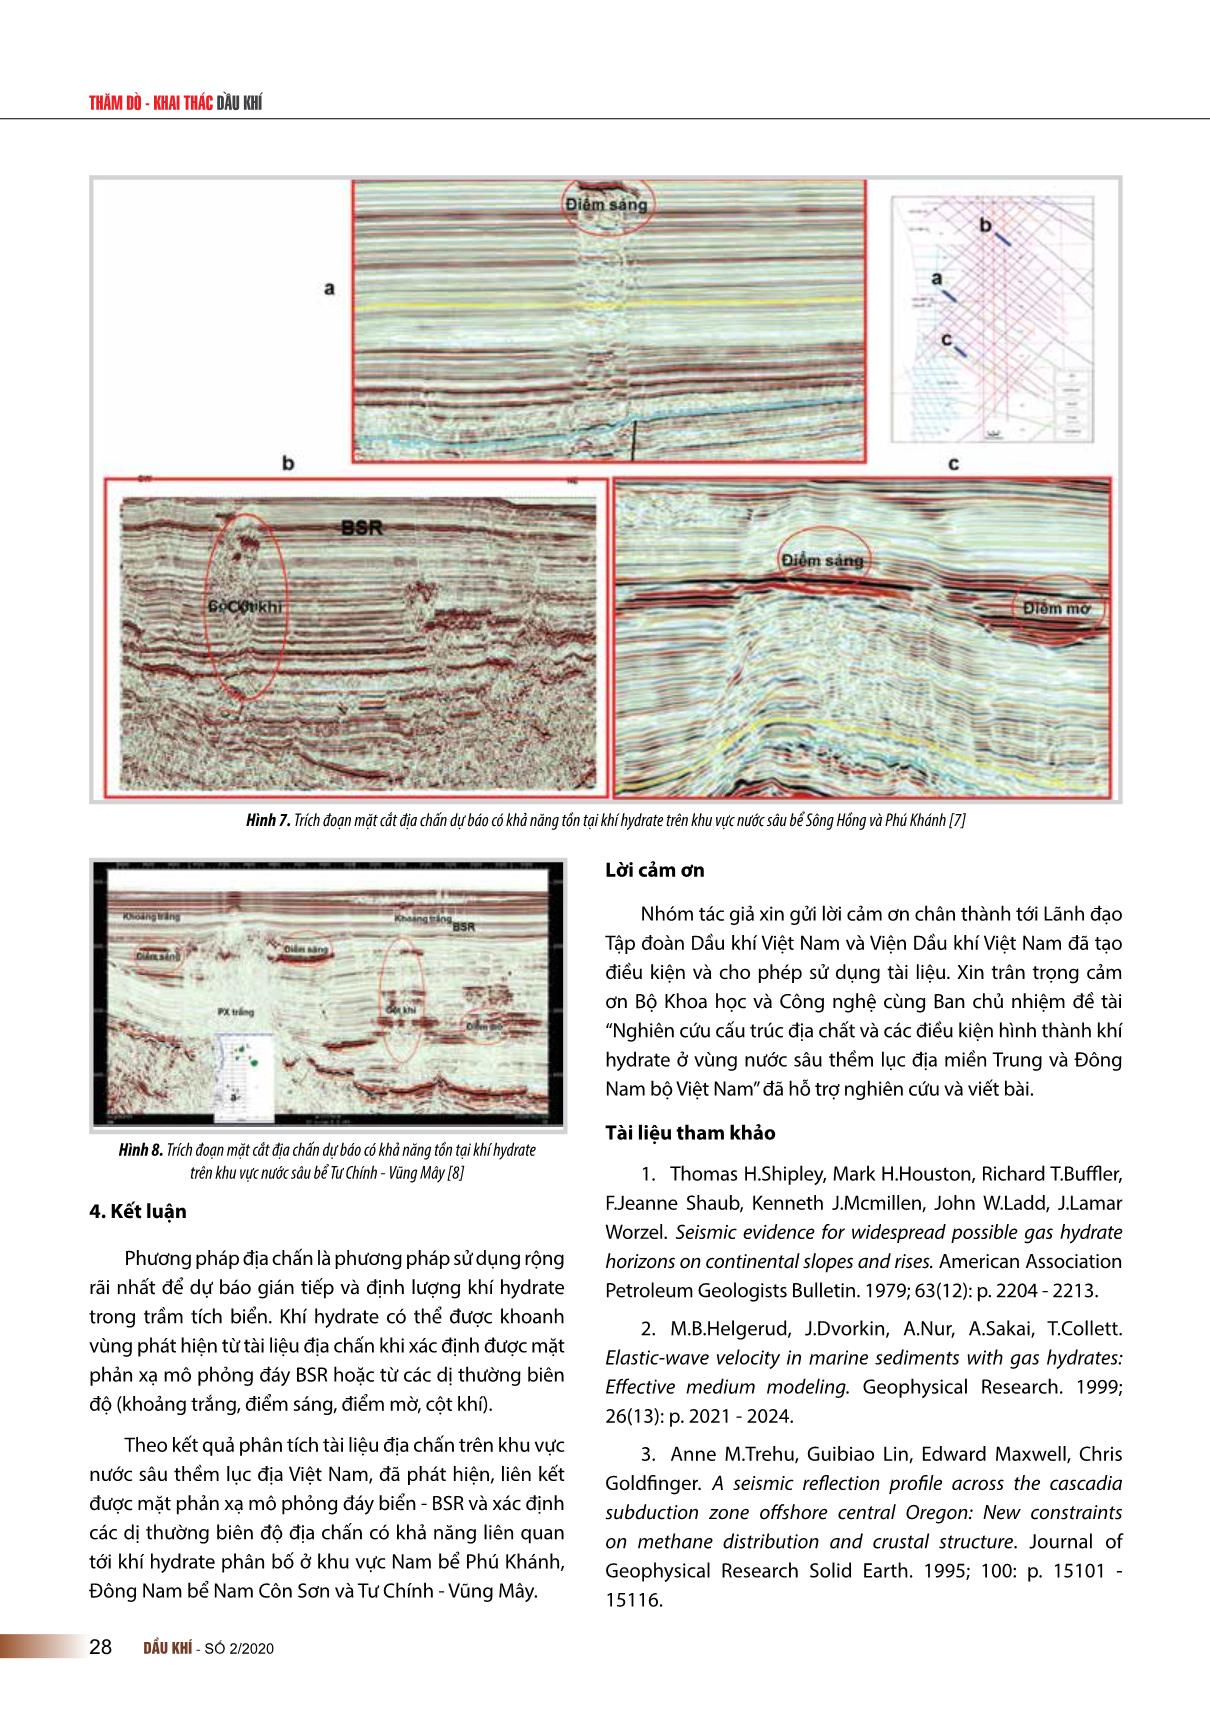 Các dấu hiệu trực tiếp dự báo sự tồn tại của khí hydrate từ tài liệu địa chấn trên khu vực nước sâu thềm lục địa Việt Nam trang 5